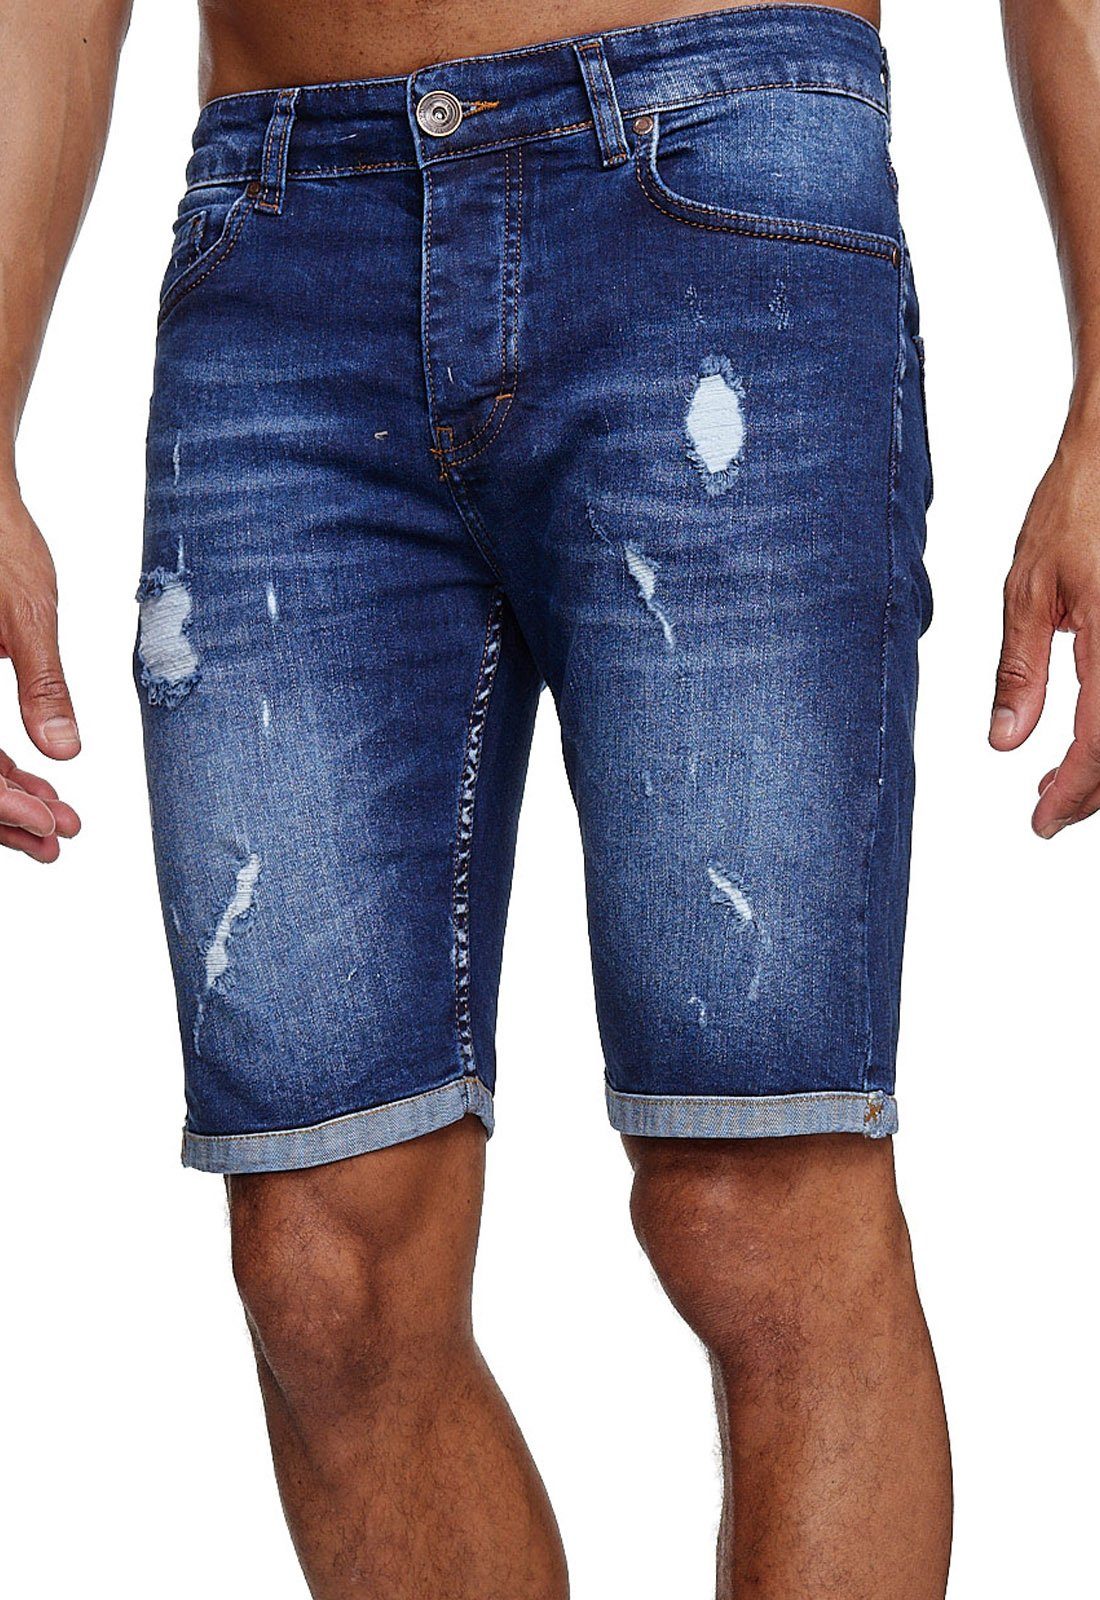 Reslad Jeansshorts Reslad Jeans Shorts Herren Kurze Hosen Sommer l Used Look Destroyed Destroyed Jeansbermudas Stretch Jeans-Hose blau